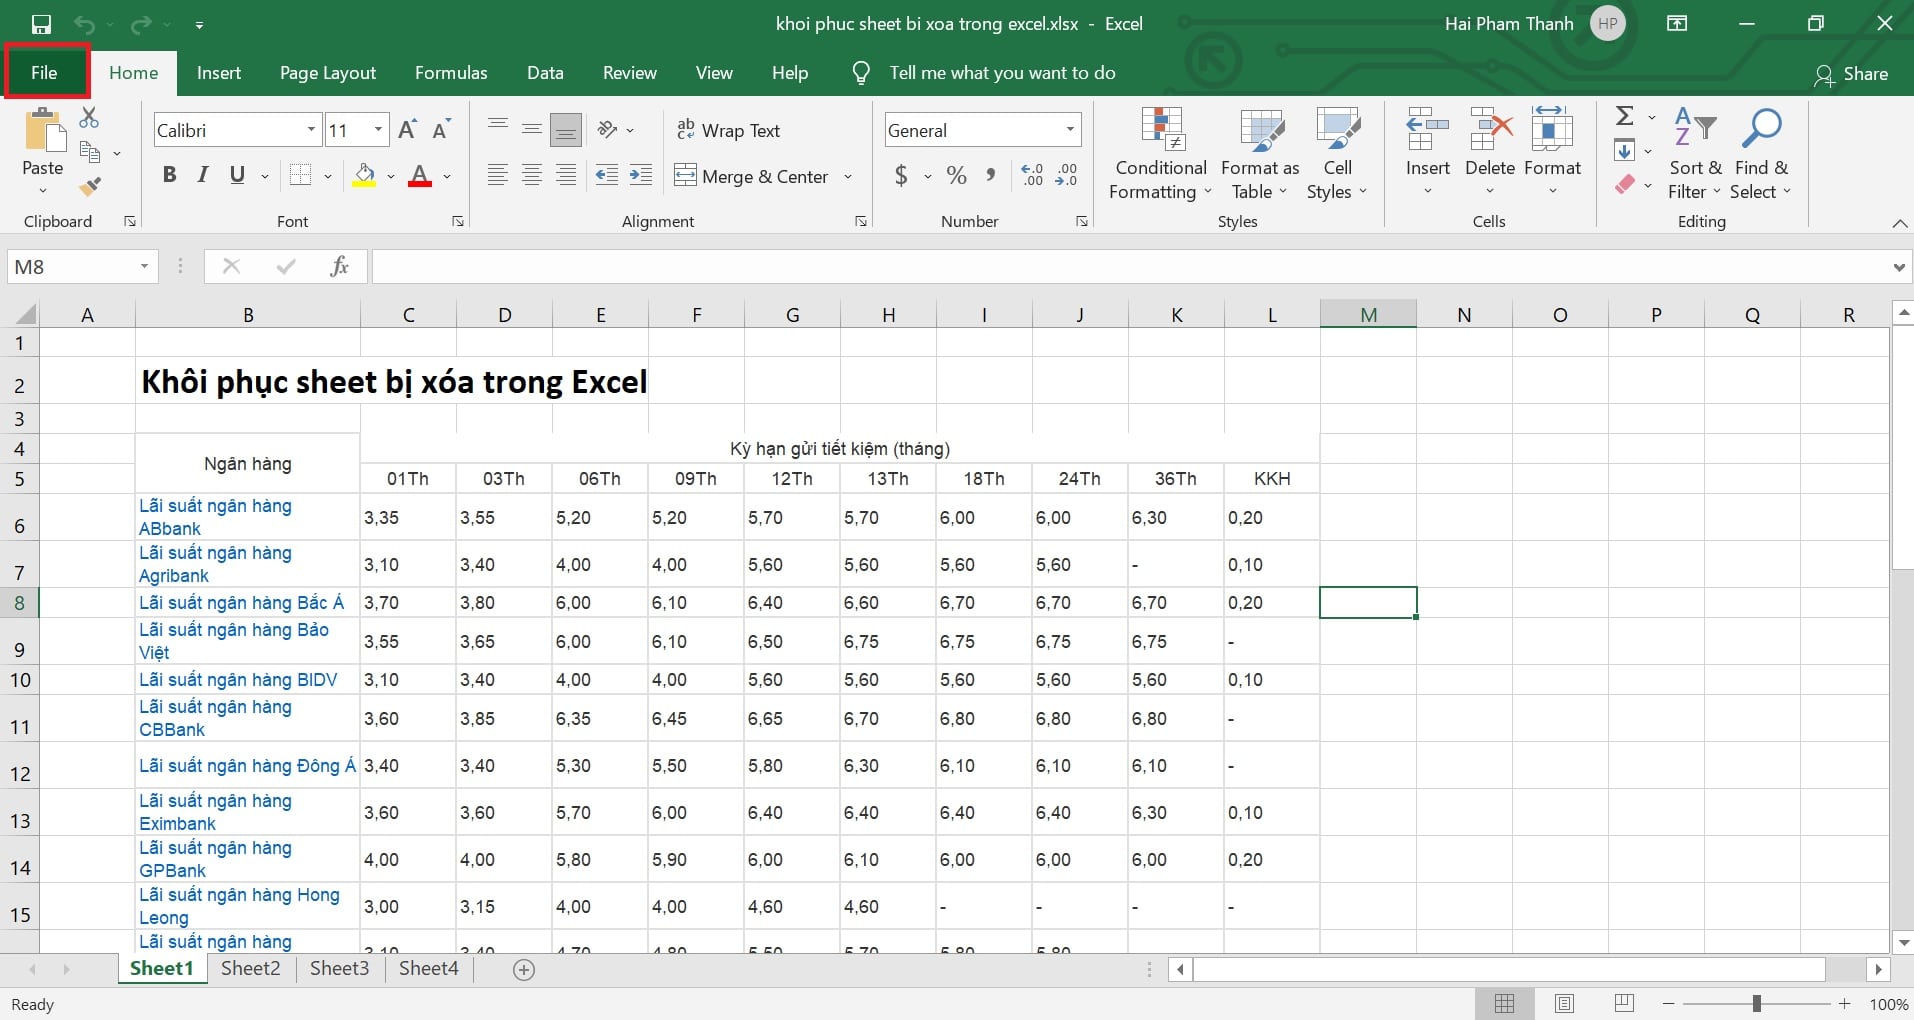 Khôi phục sheet bị xóa trong Excel